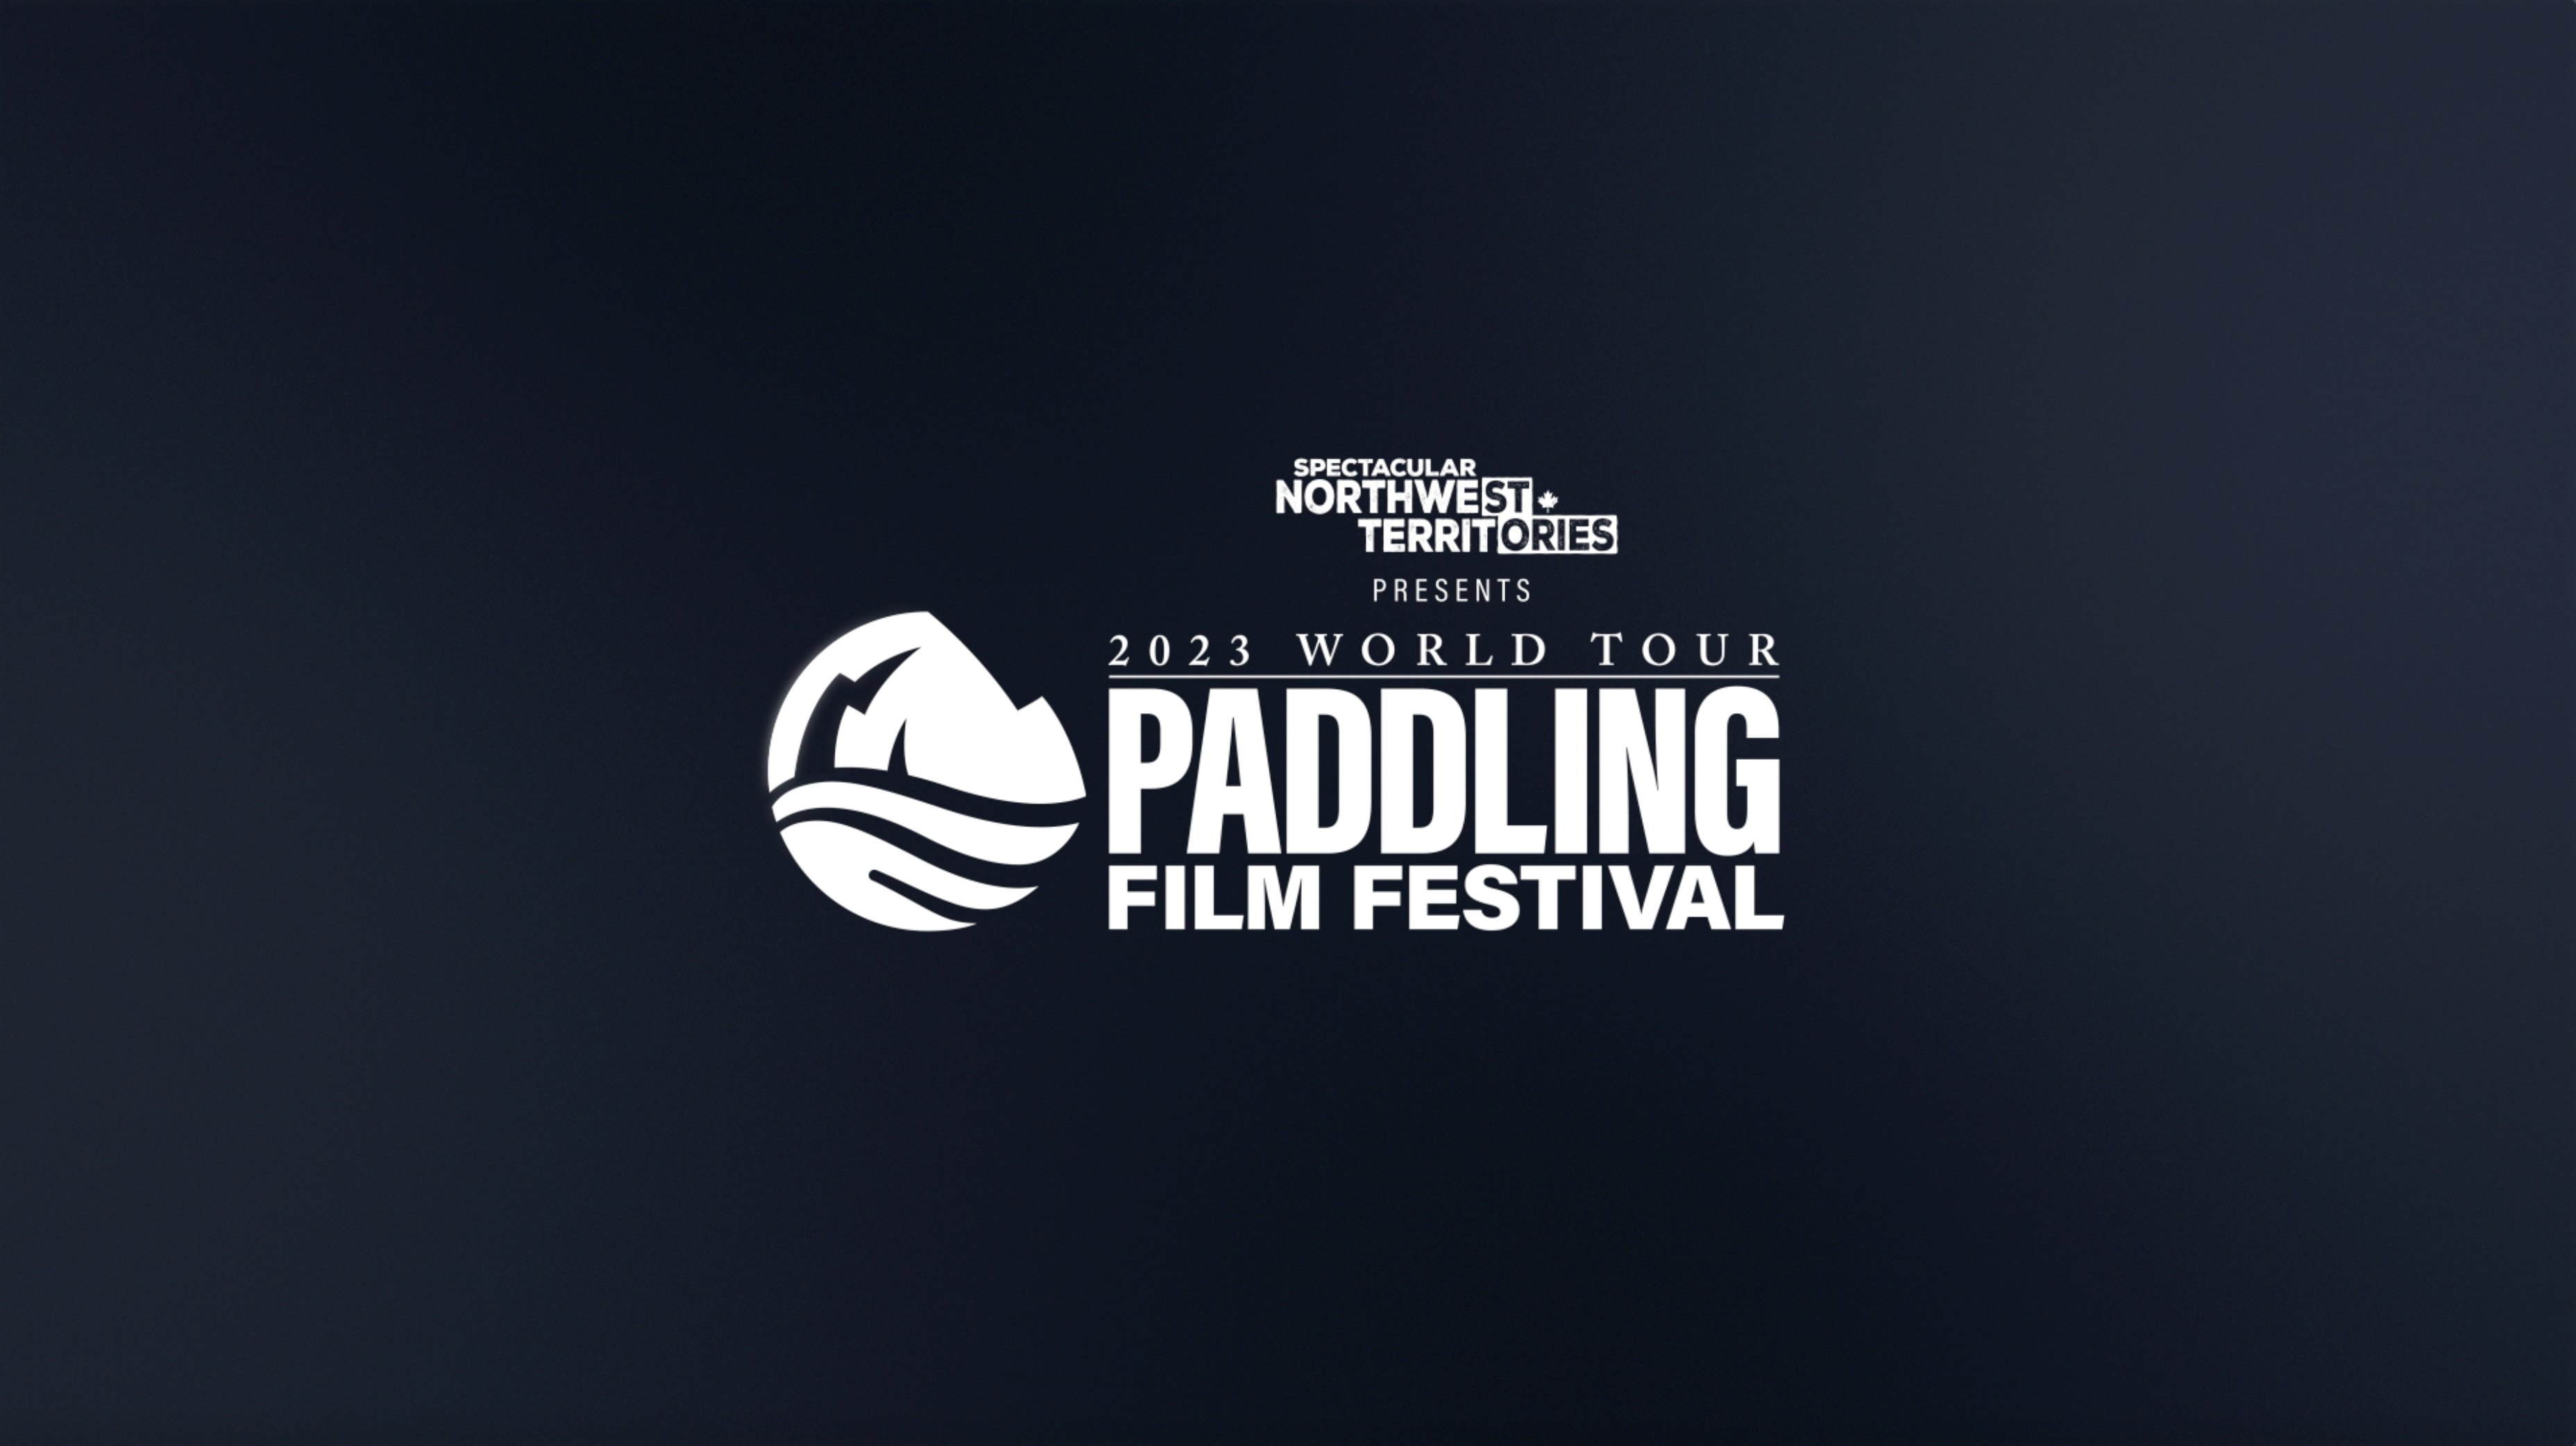 Load video: Paddling Film Festival World Tour Trailer 2023